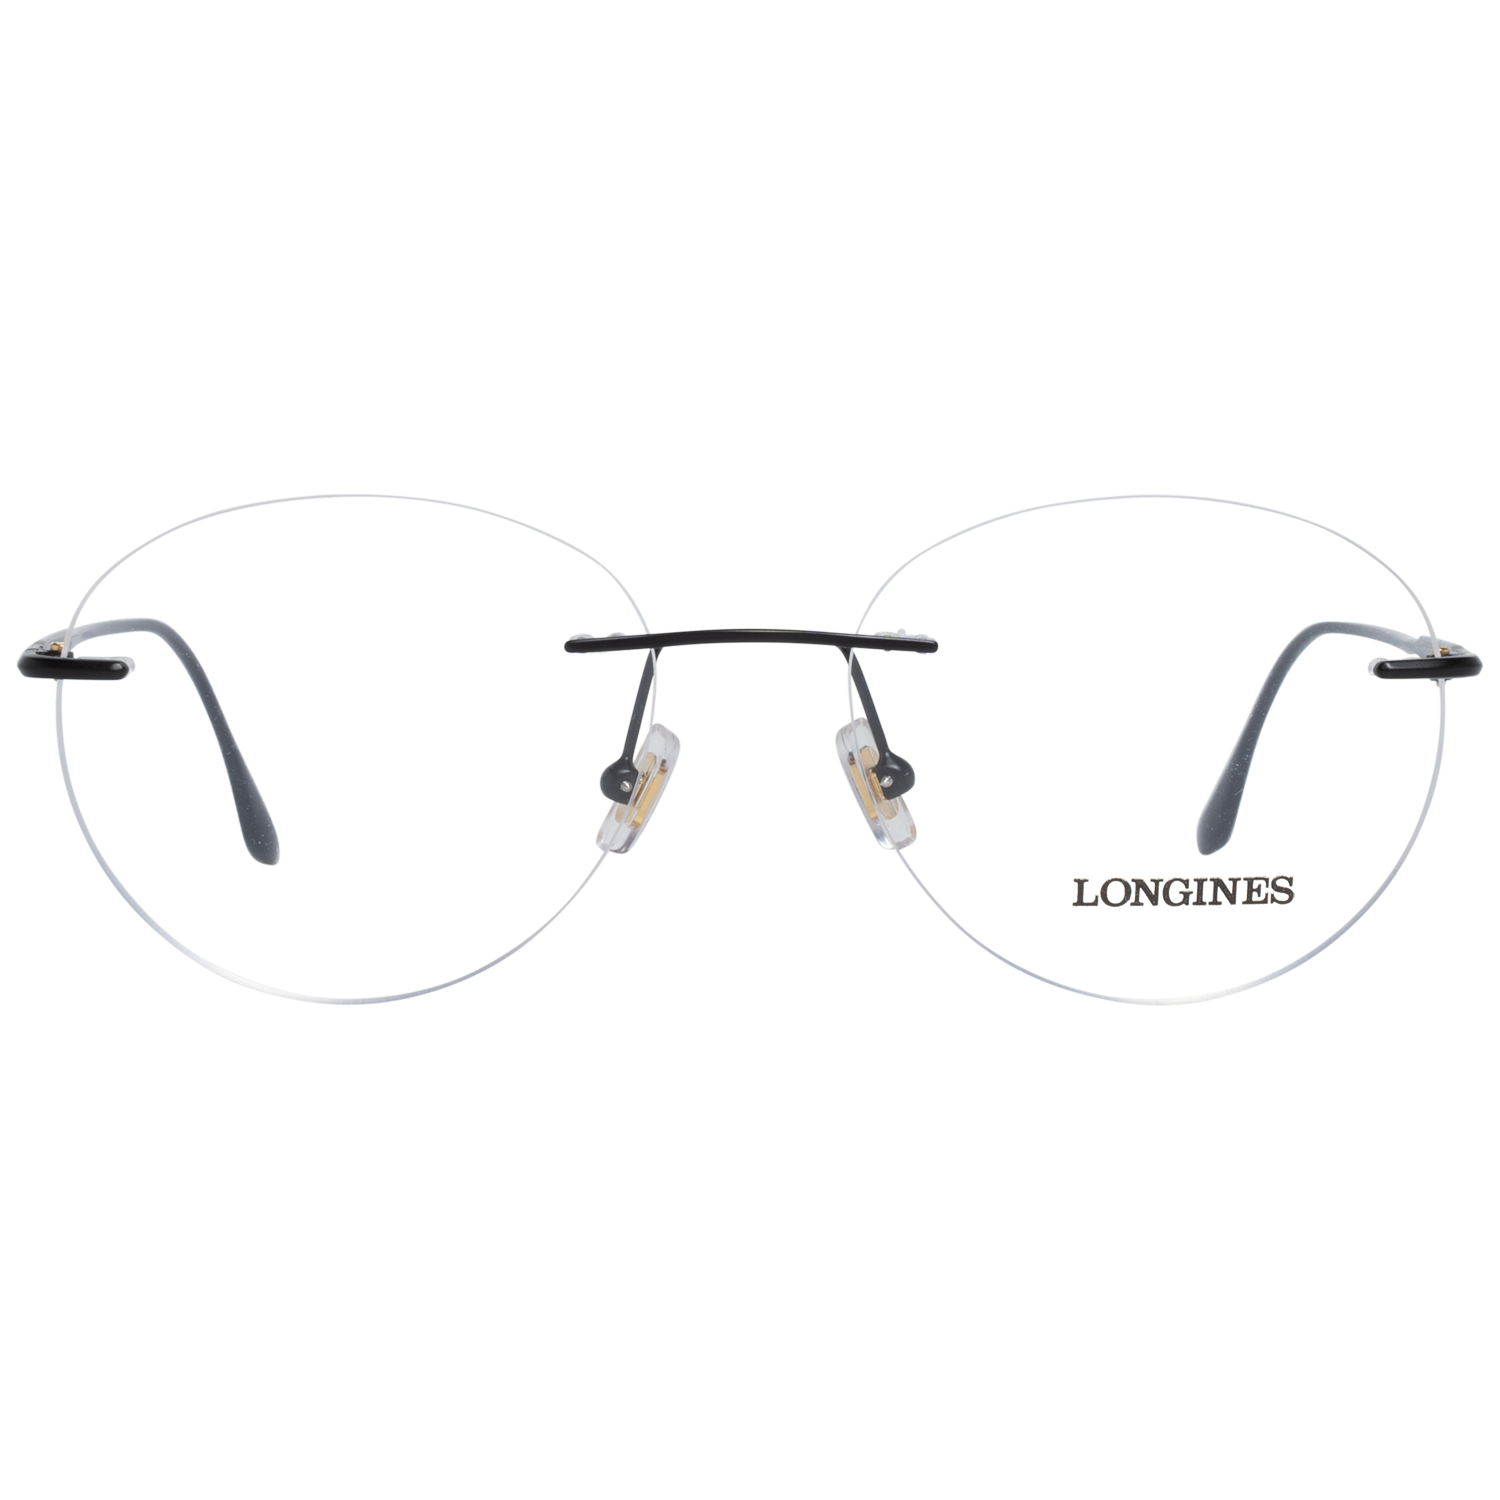 Longines Frames Longines Optical Frame LG5002-H 002 53 Eyeglasses Eyewear UK USA Australia 